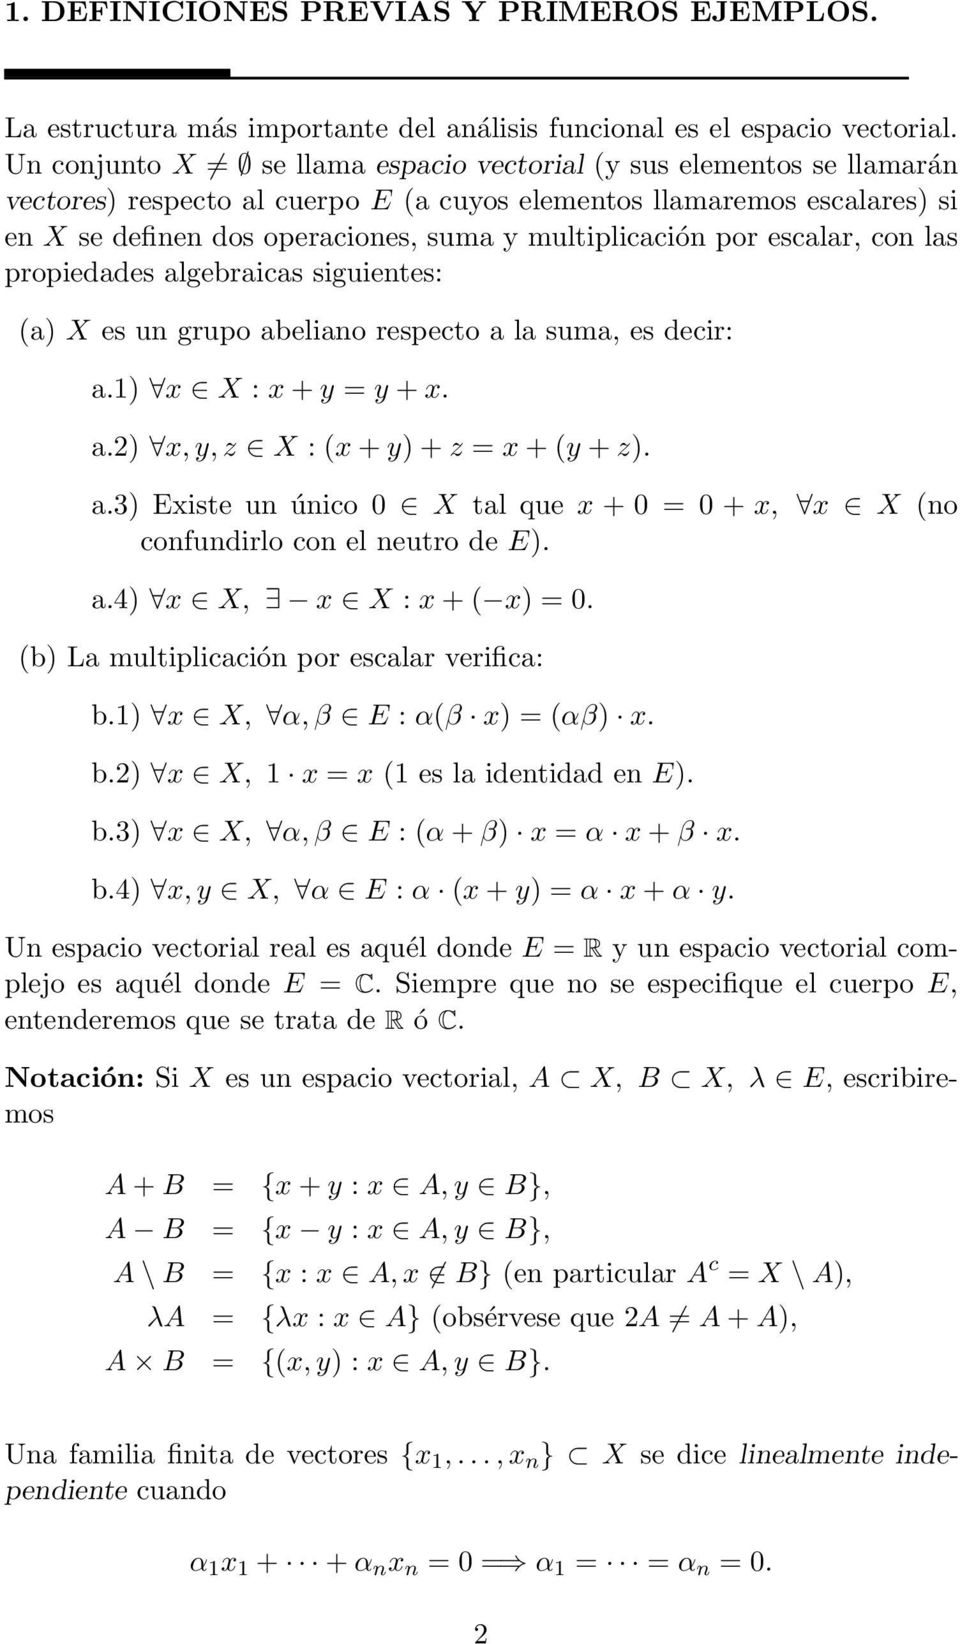 por escalar, con las propiedades algebraicas siguientes: (a) X es un grupo abeliano respecto a la suma, es decir: a.1) x X : x + y = y + x. a.2) x, y, z X : (x + y) + z = x + (y + z). a.3) Existe un único 0 X tal que x + 0 = 0 + x, x X (no confundirlo con el neutro de E).